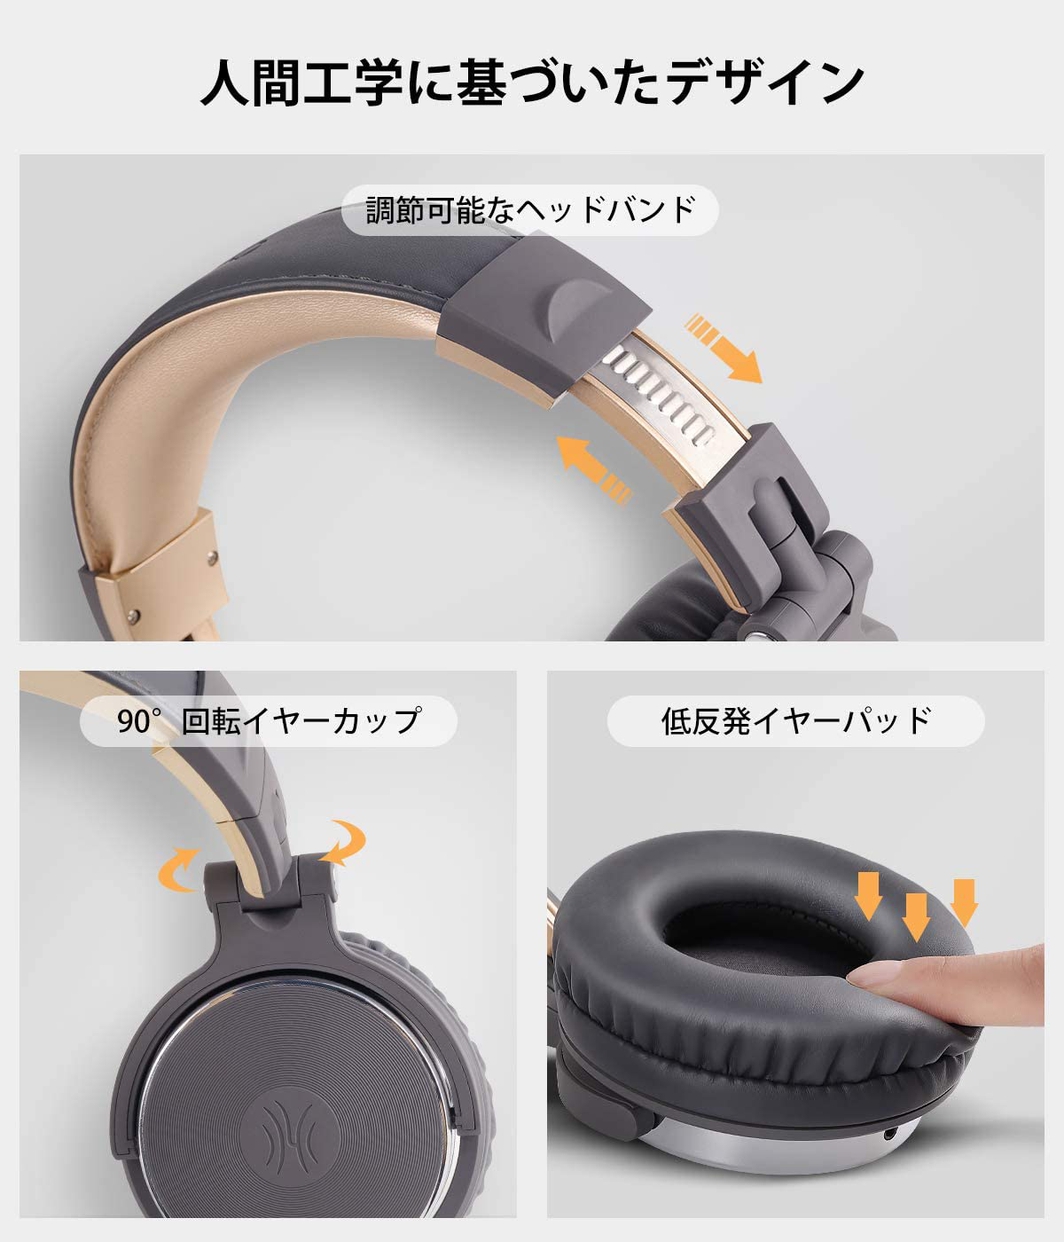 OneOdio(ワンオディオ) モニターヘッドホン Pro10の商品画像サムネ5 